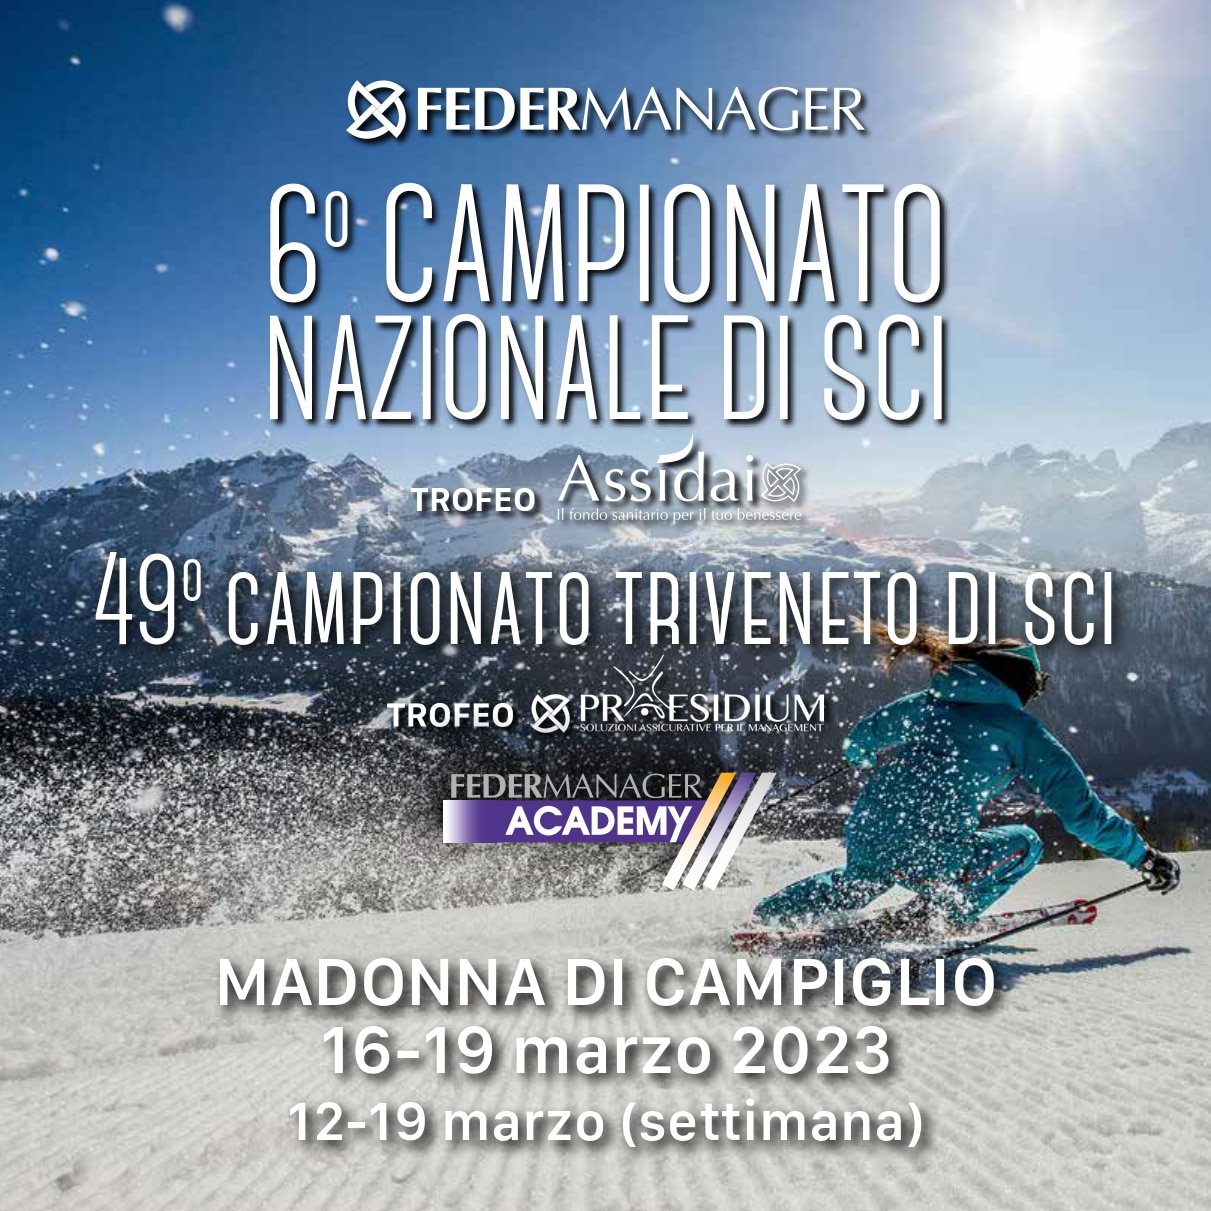 Campionato di Sci Federmanager, Madonna di Campiglio 16-19 marzo 2023